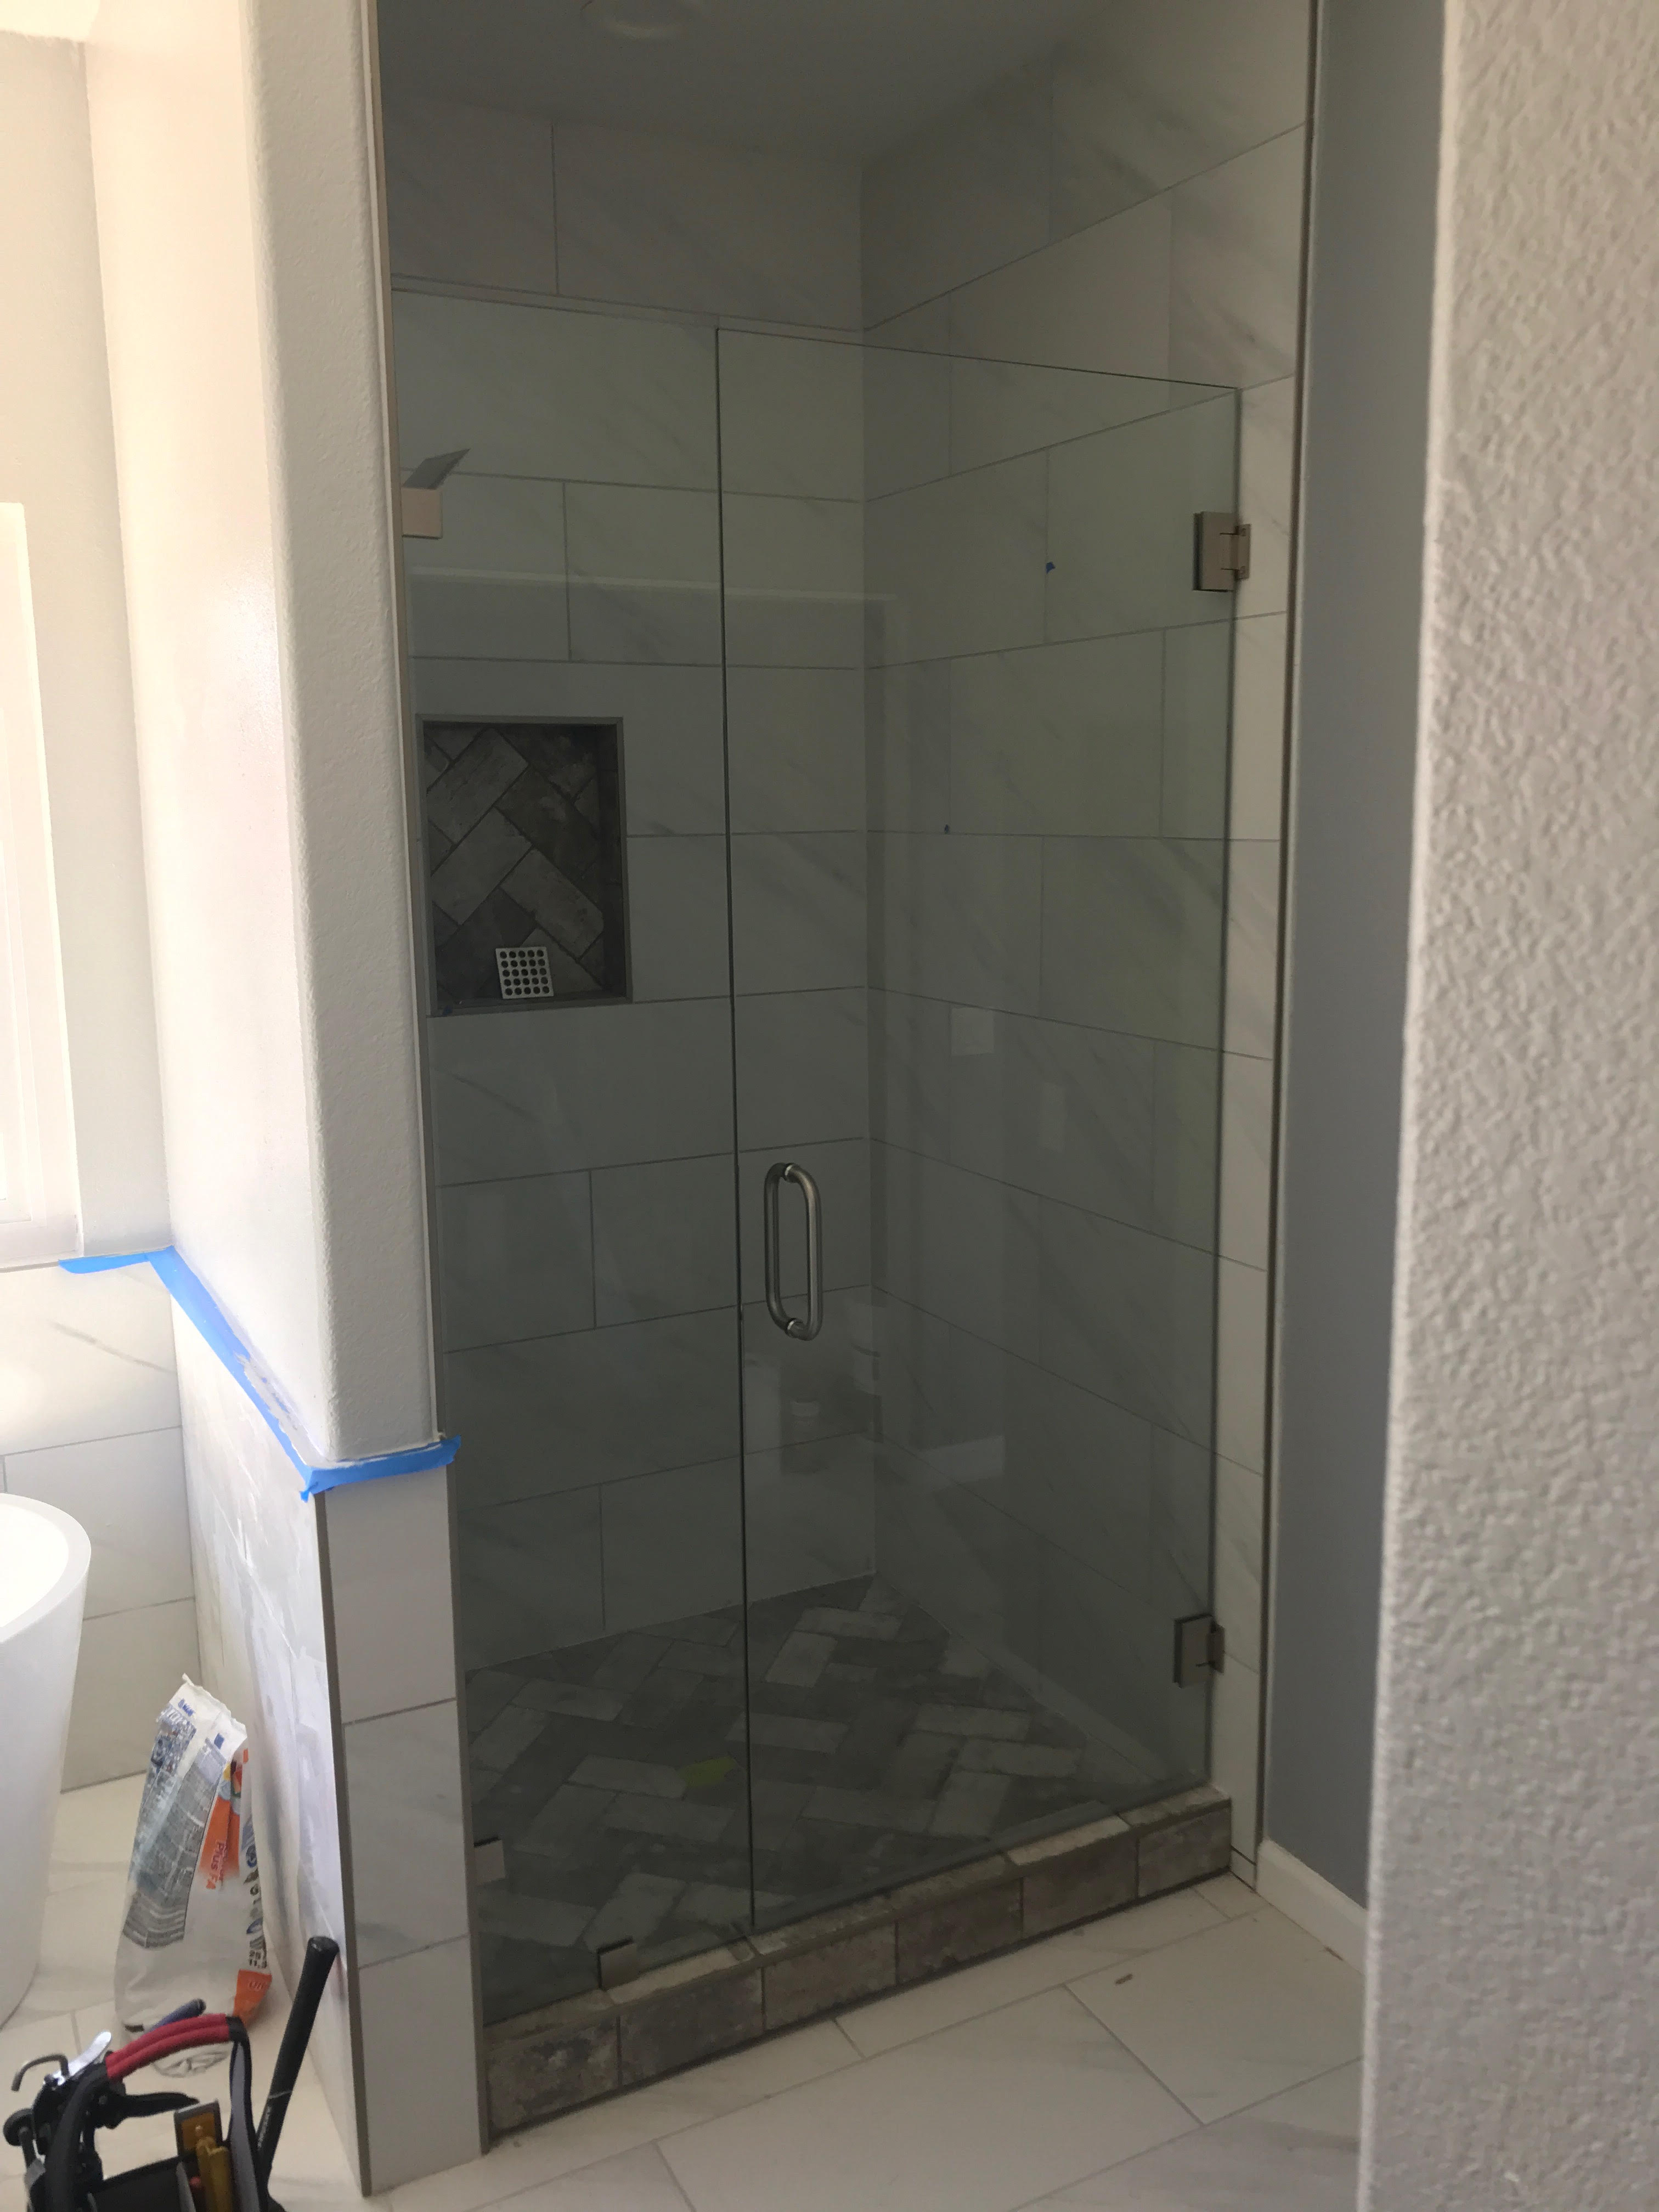 Clean and simple shower door